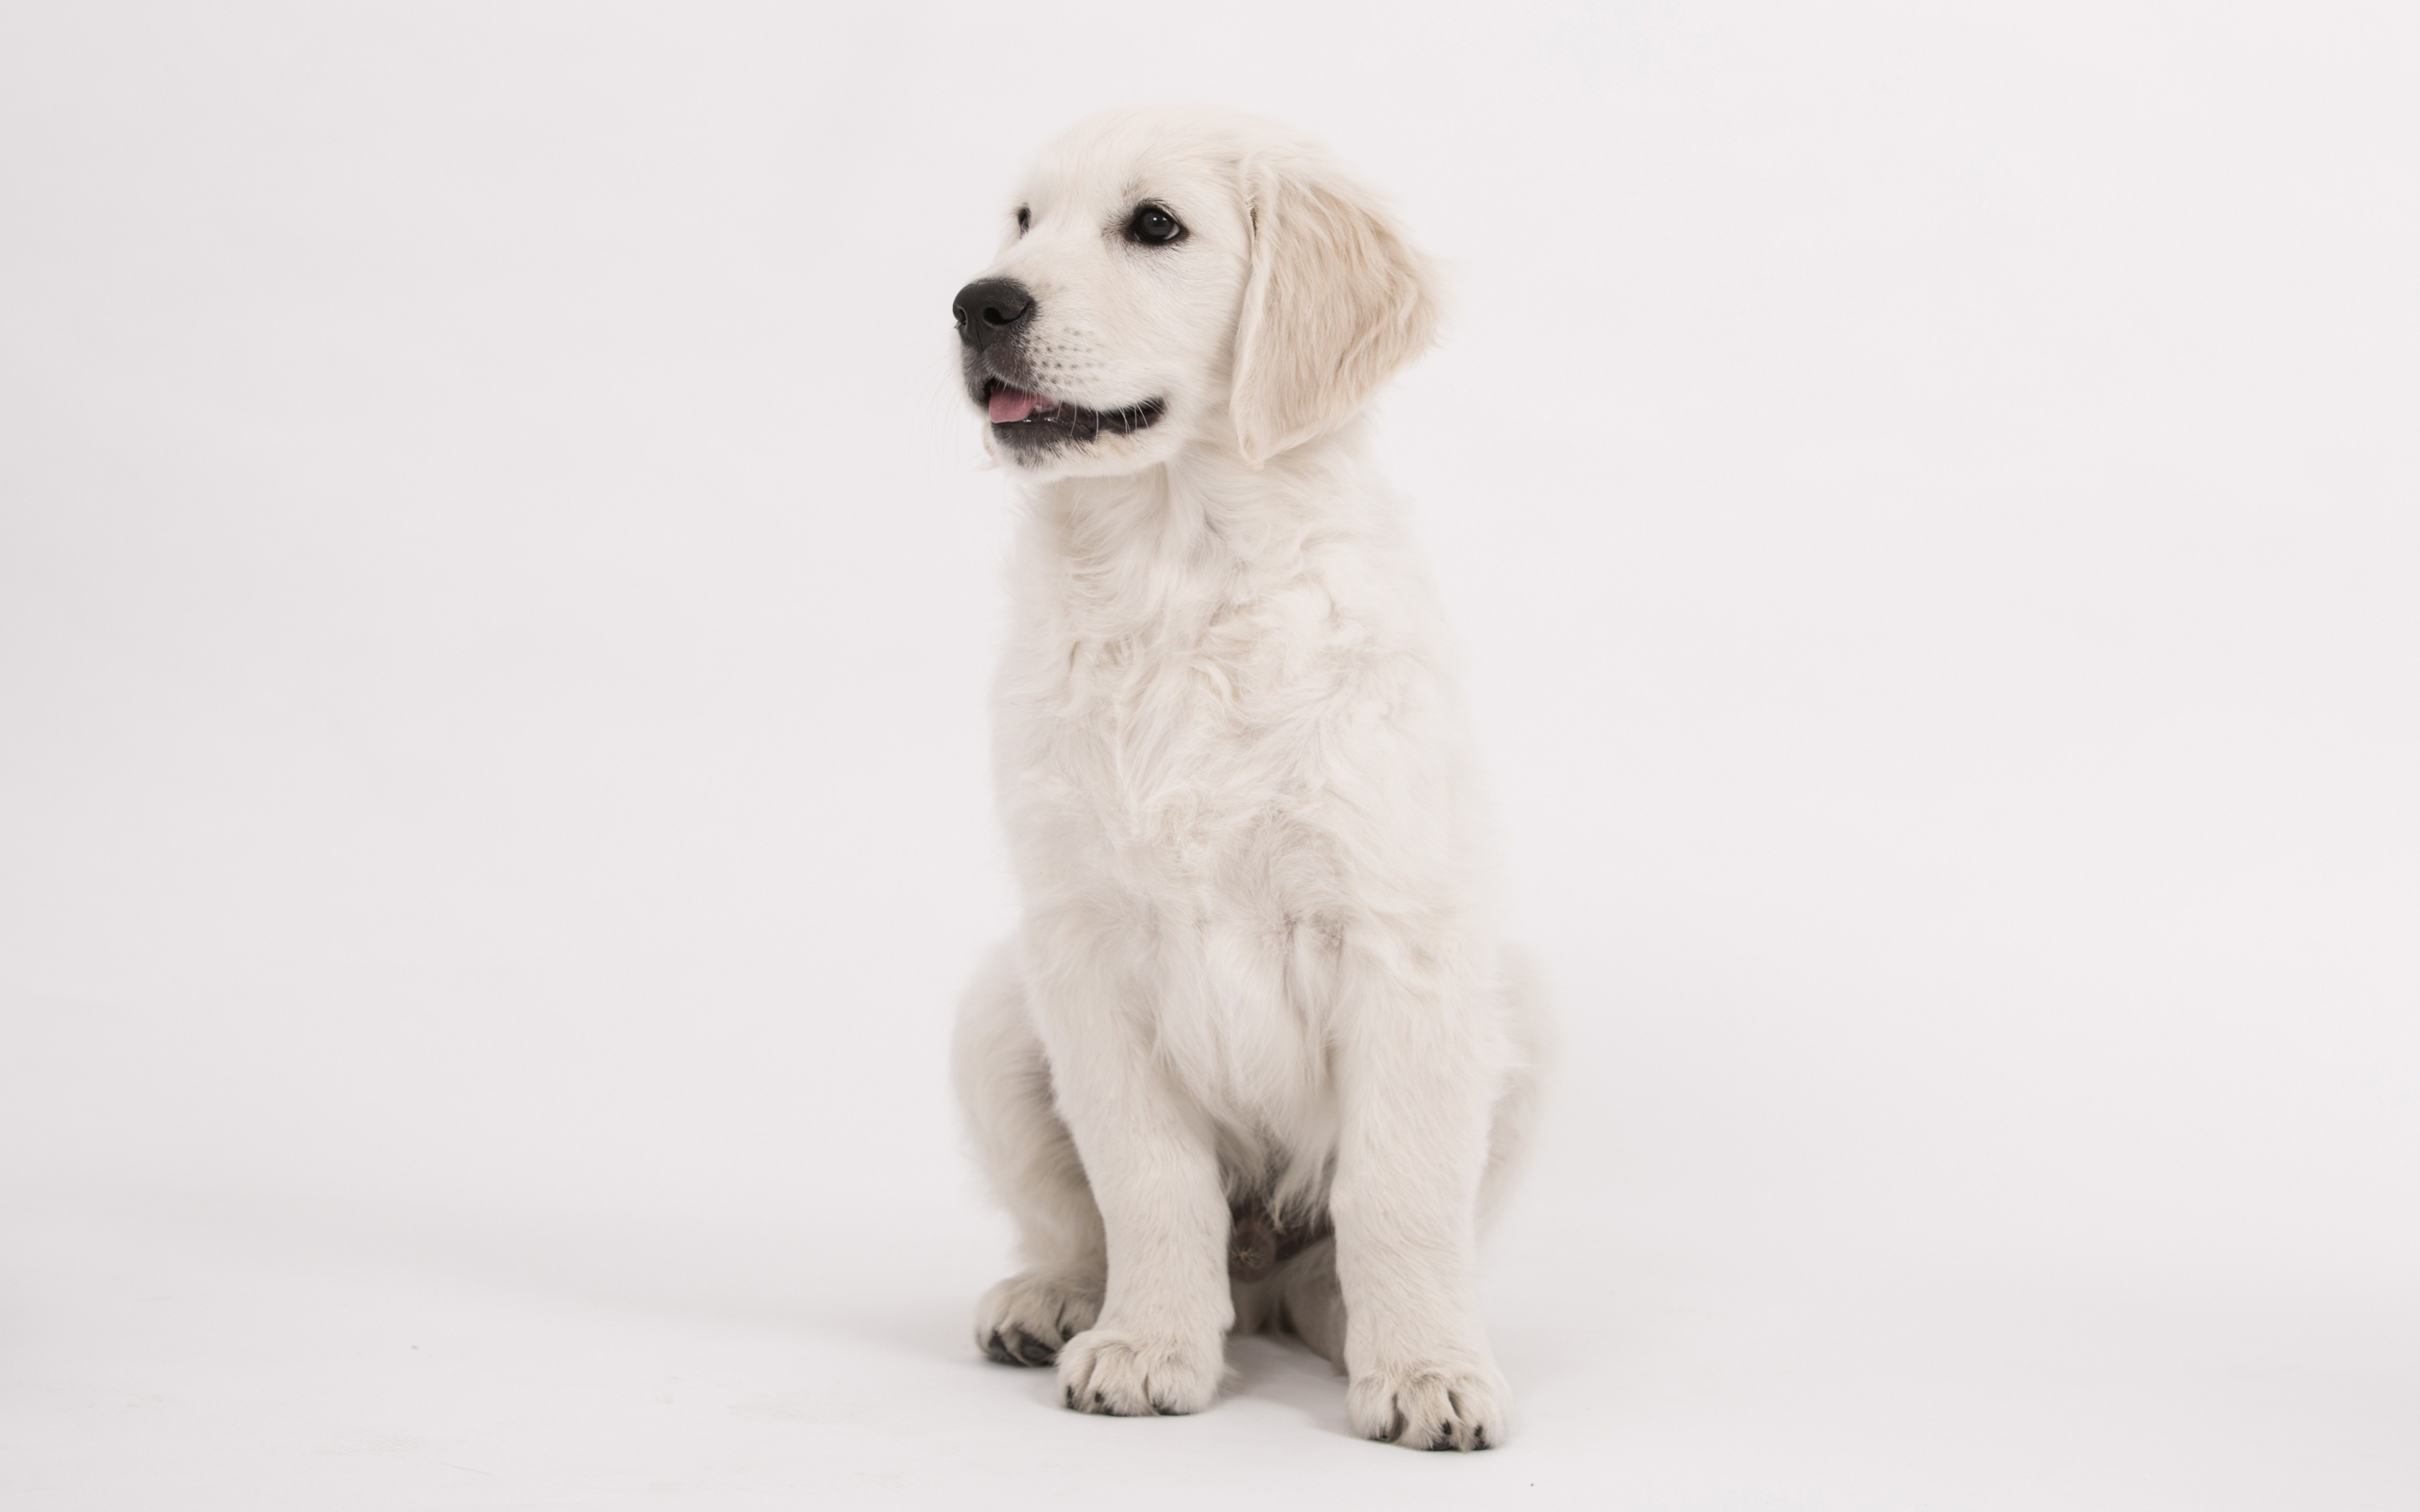 Puppy, cute, dog, golden retriever, 2880x1800 wallpaper